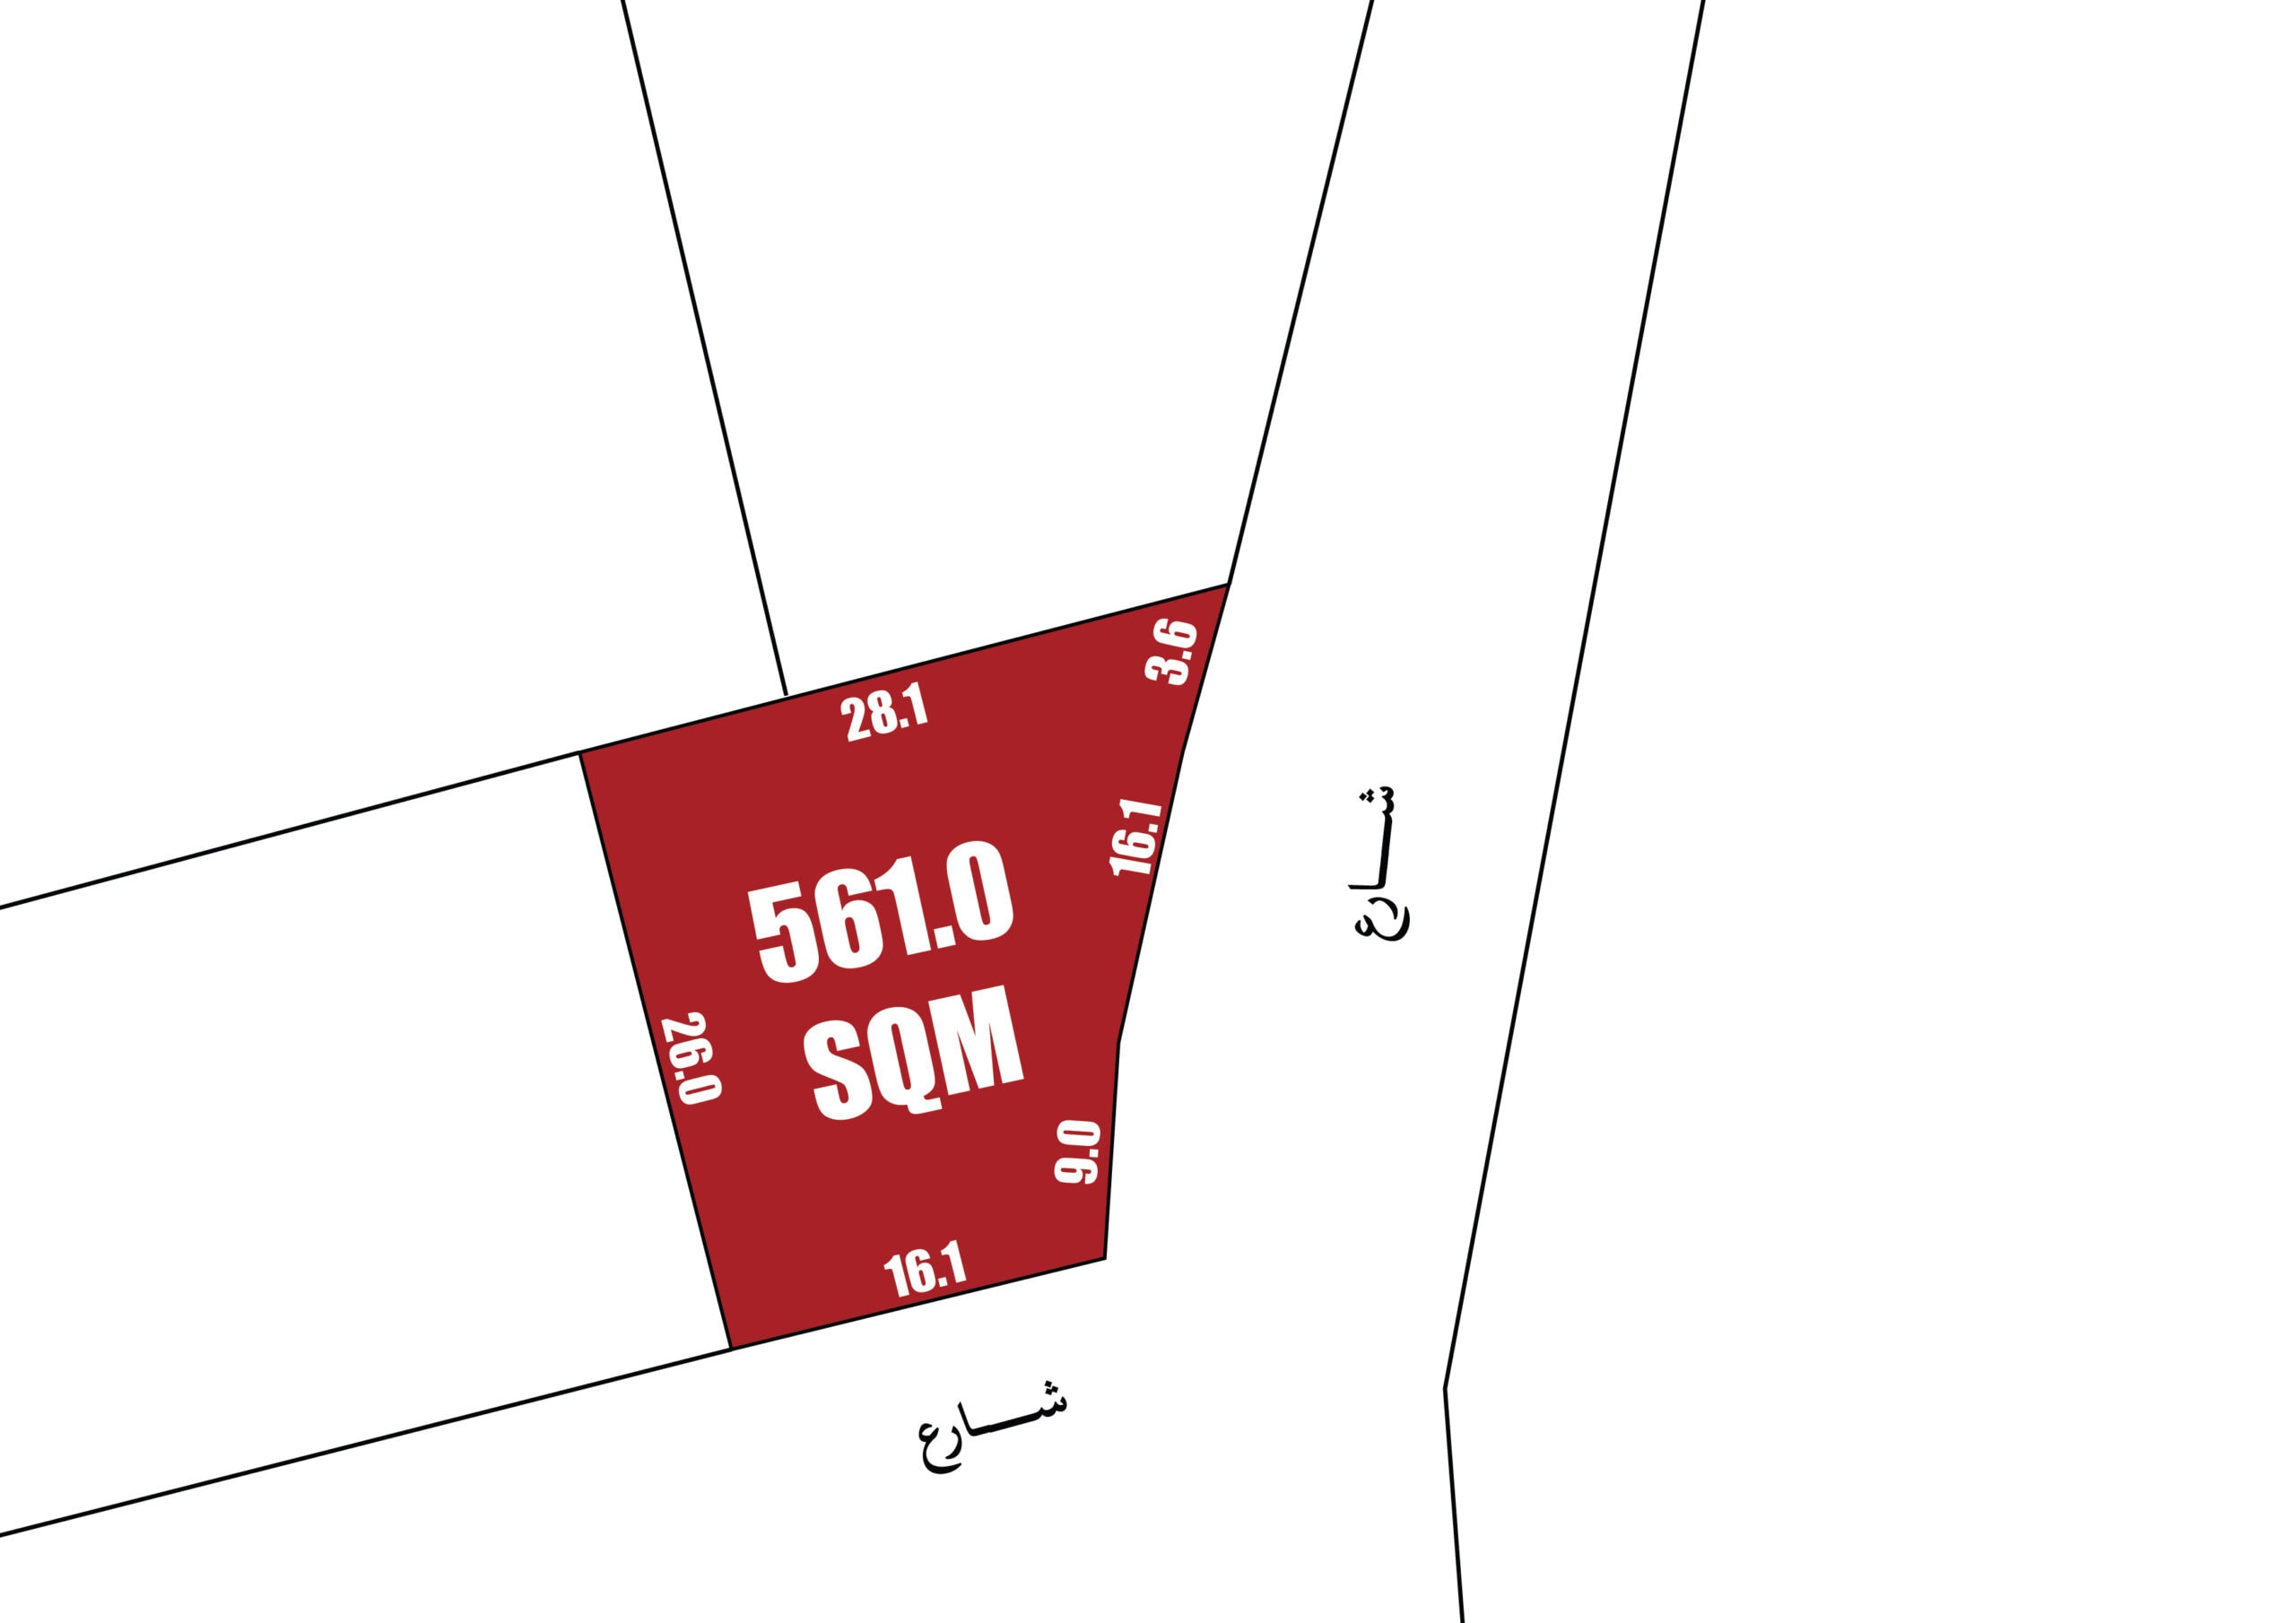 رسم تخطيطي يوضح منظر مخطط لمنطقة عقار بقياسات تشير إلى 561.0 متر مربع.